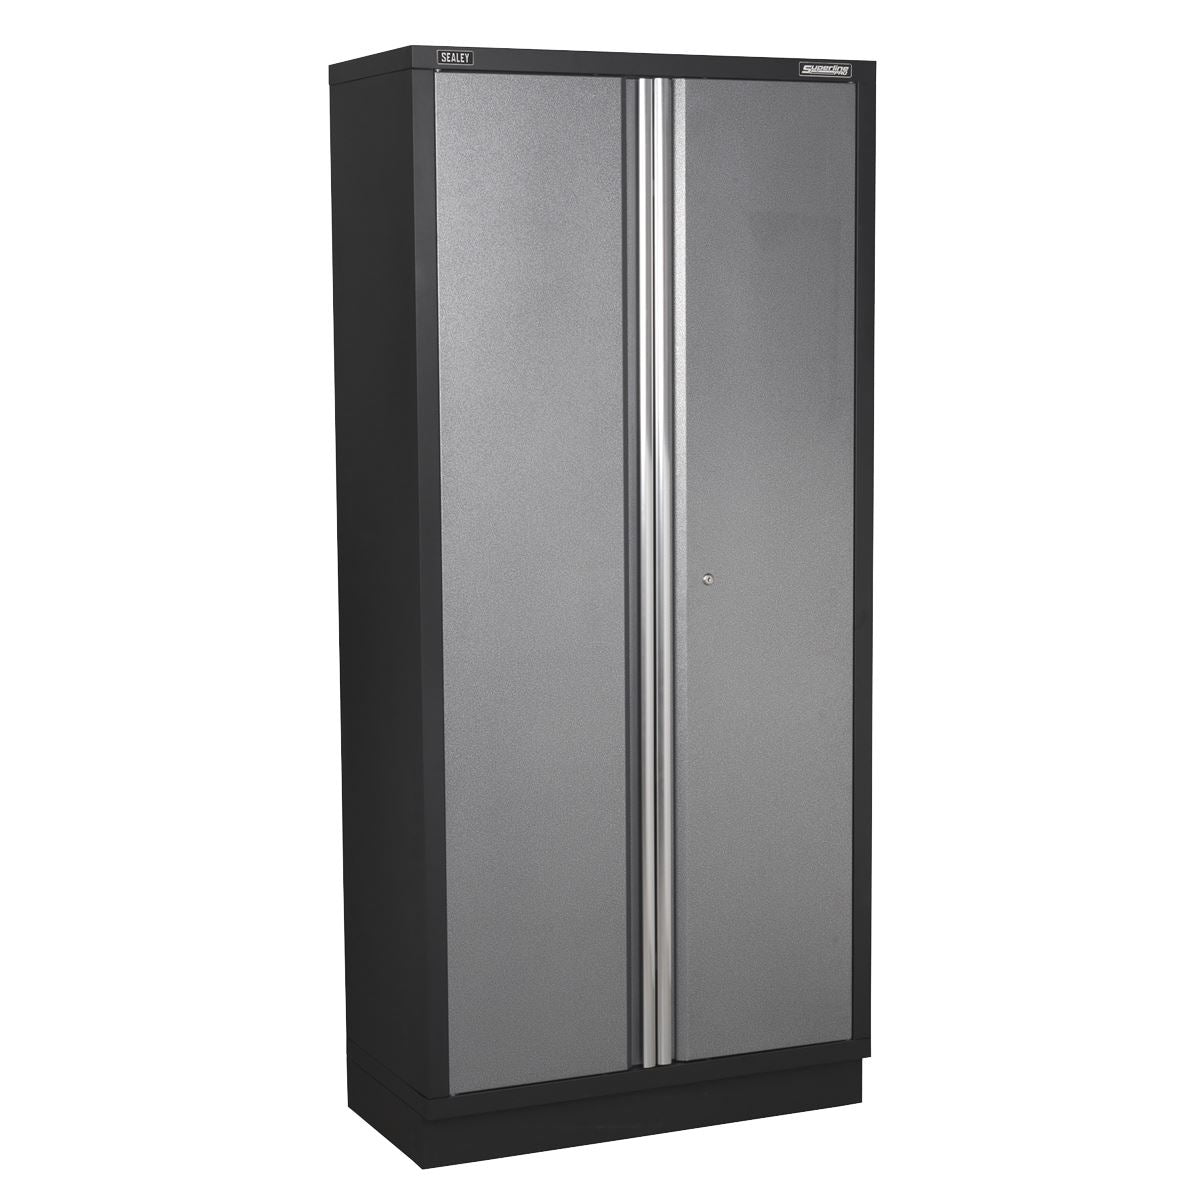 Sealey Superline Pro Modular Floor Cabinet 2 Door Full Height 915mm